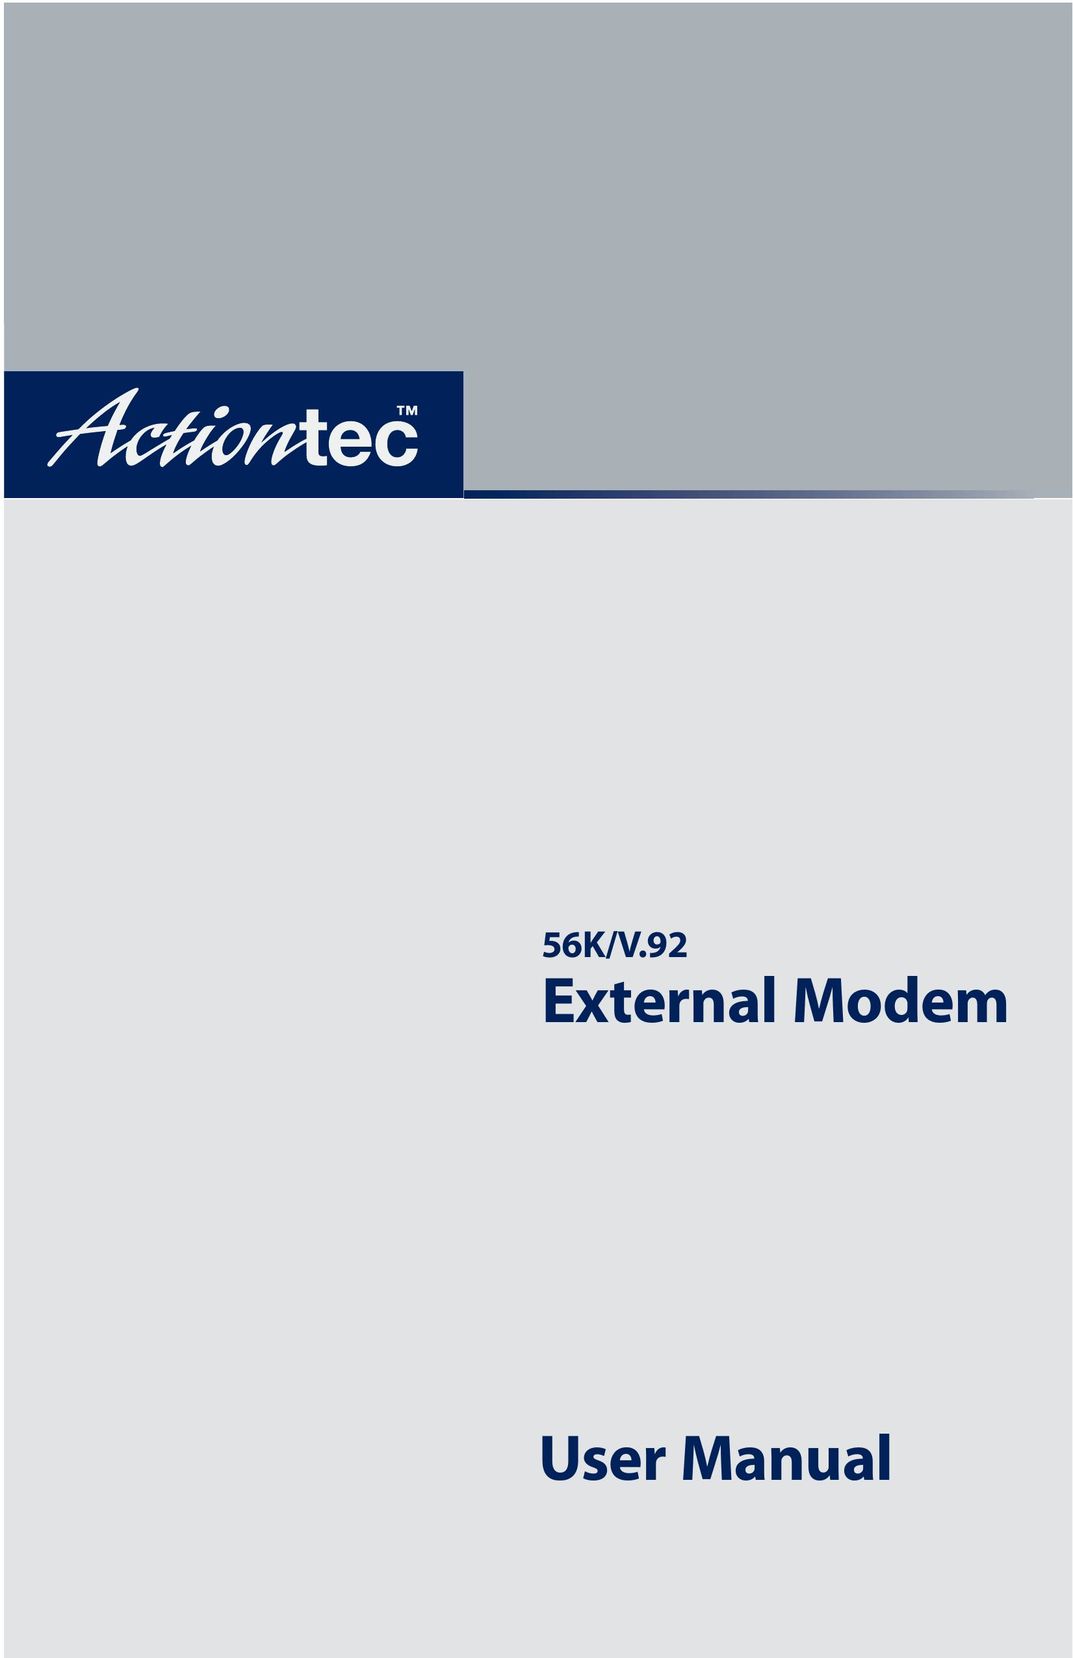 Actiontec electronic 56K/V.92 Modem User Manual